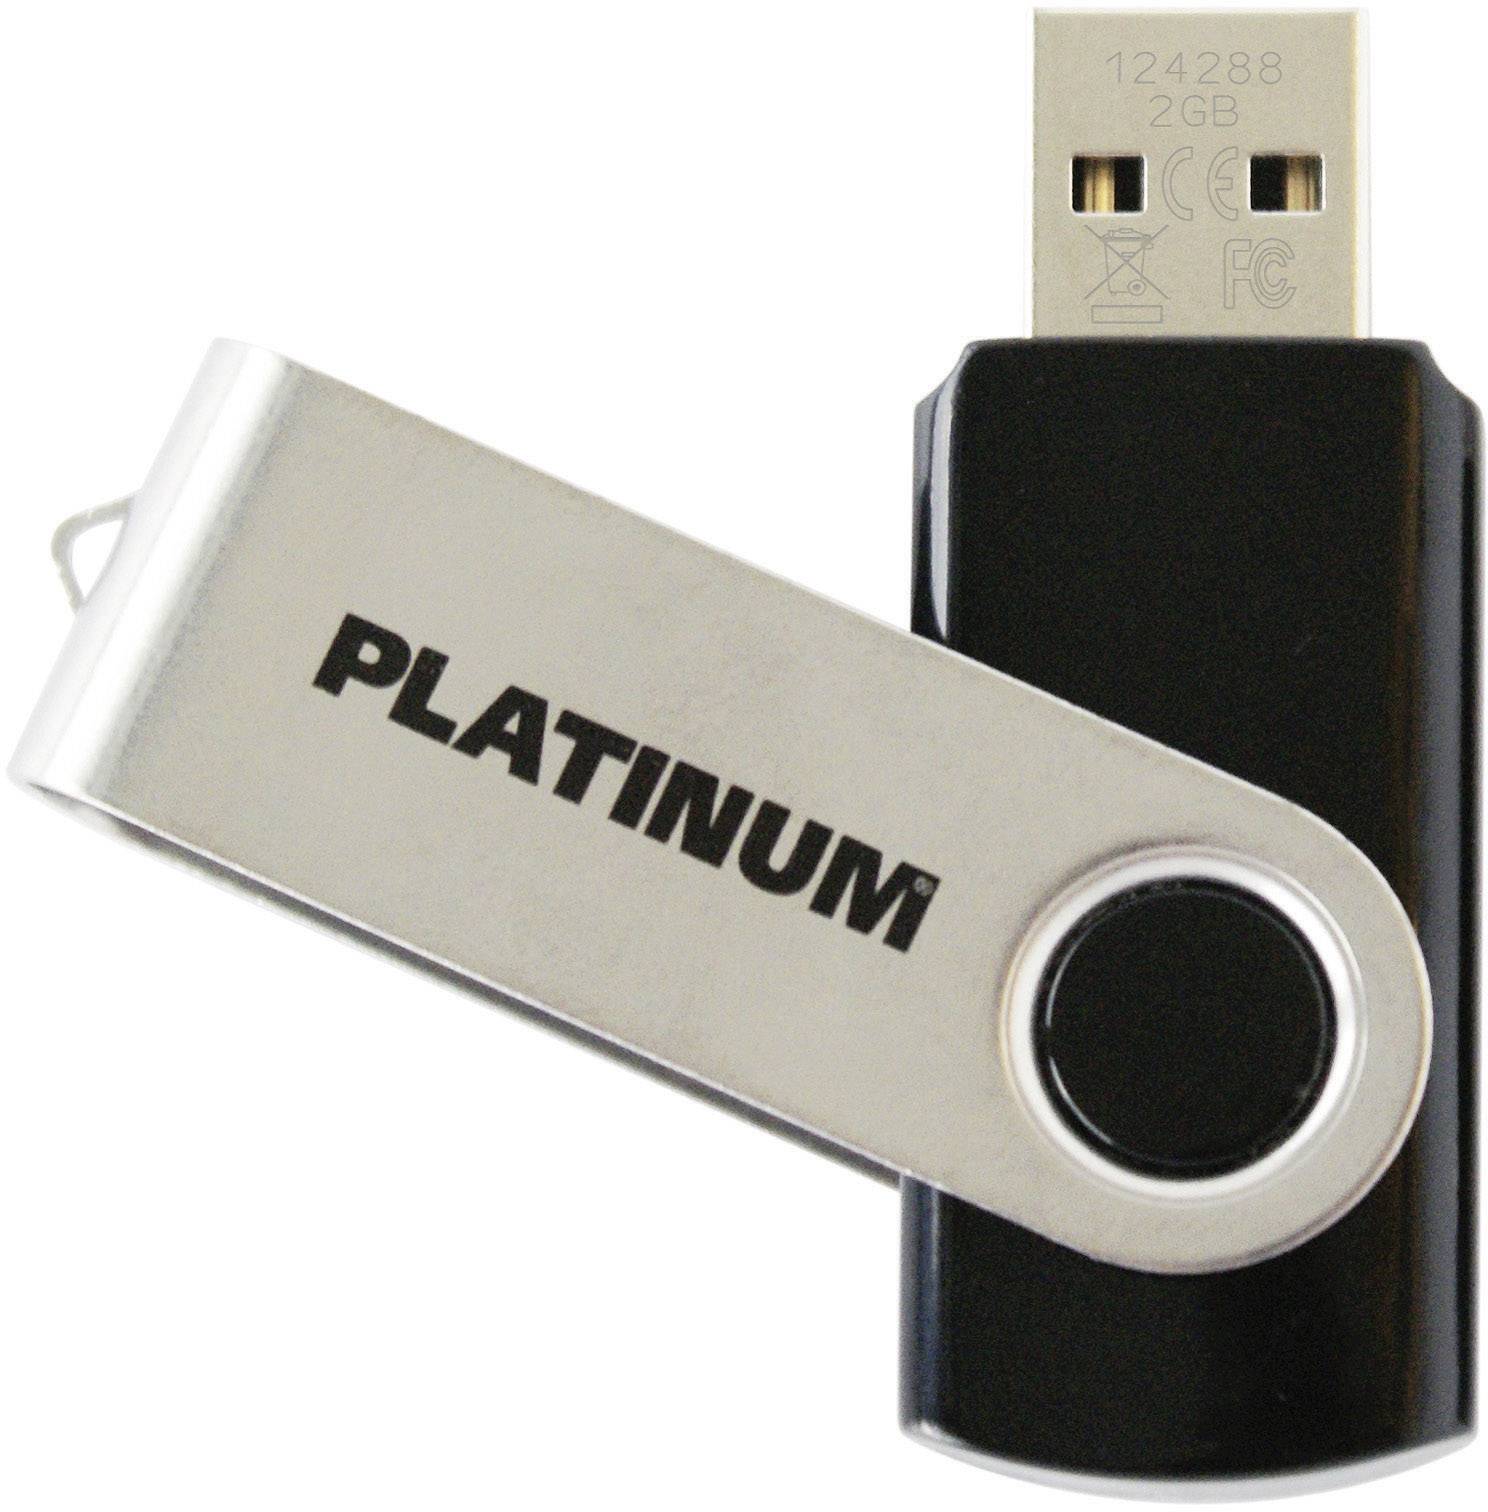 Platinum USB stick 2 177558-3 USB | Conrad.com